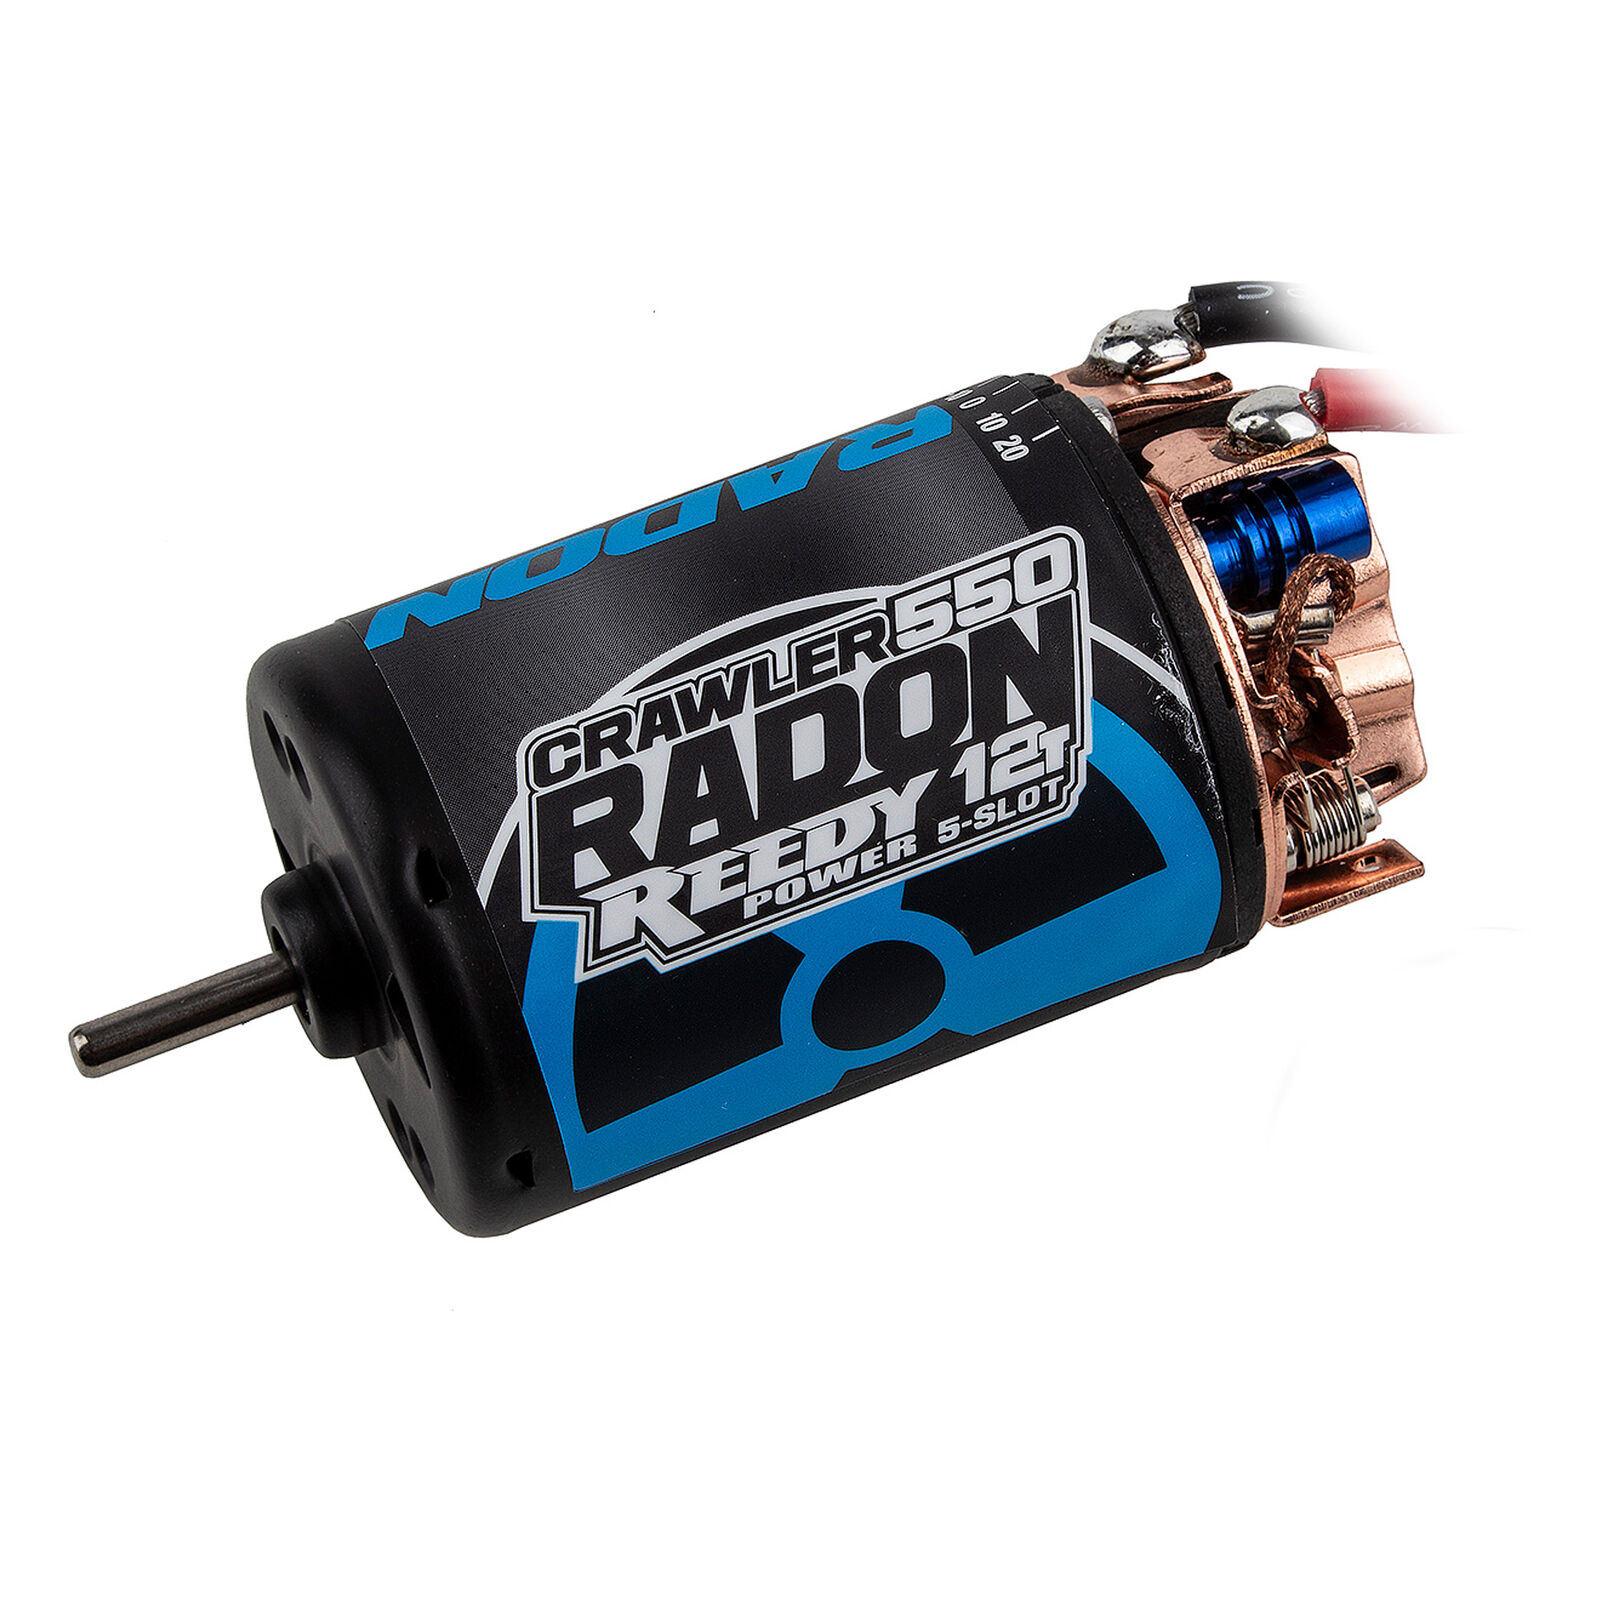 Reedy Radon 2 Crawler 550 12T 5-Slot 1850Kv Motor